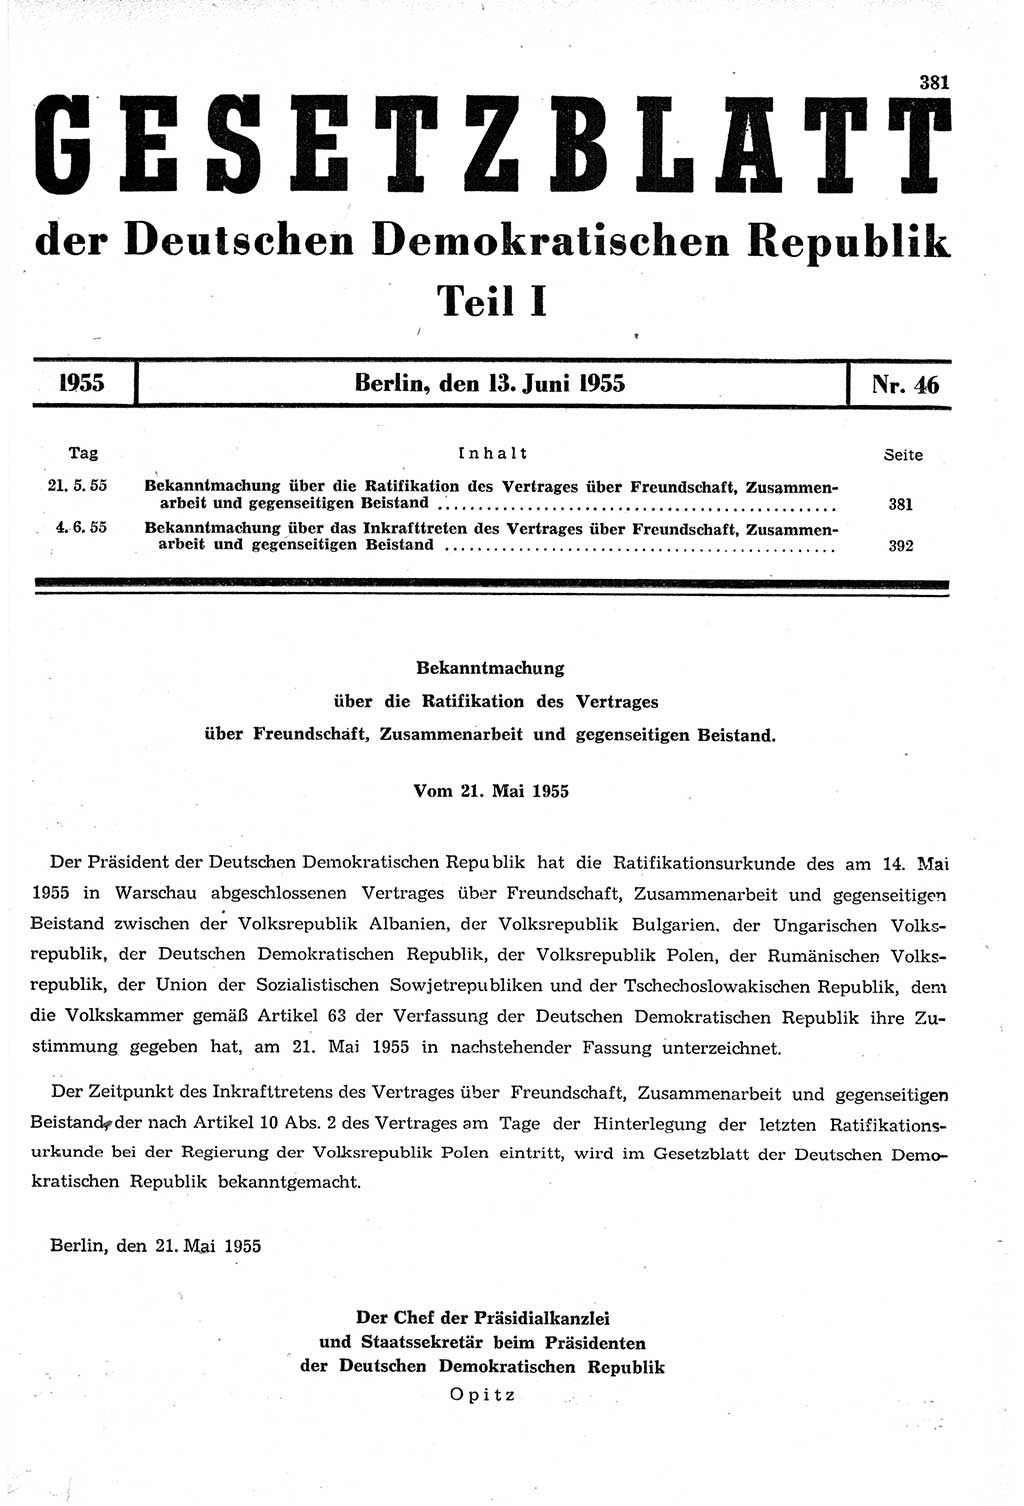 Gesetzblatt (GBl.) der Deutschen Demokratischen Republik (DDR) Teil Ⅰ 1955, Seite 381 (GBl. DDR Ⅰ 1955, S. 381)